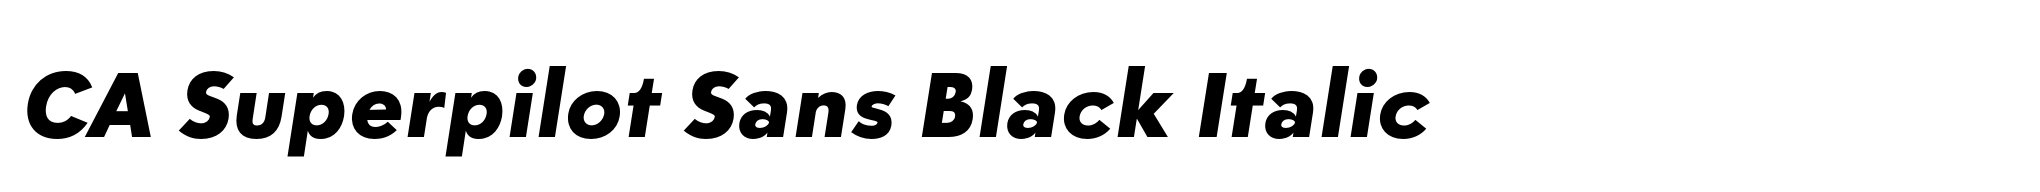 CA Superpilot Sans Black Italic image